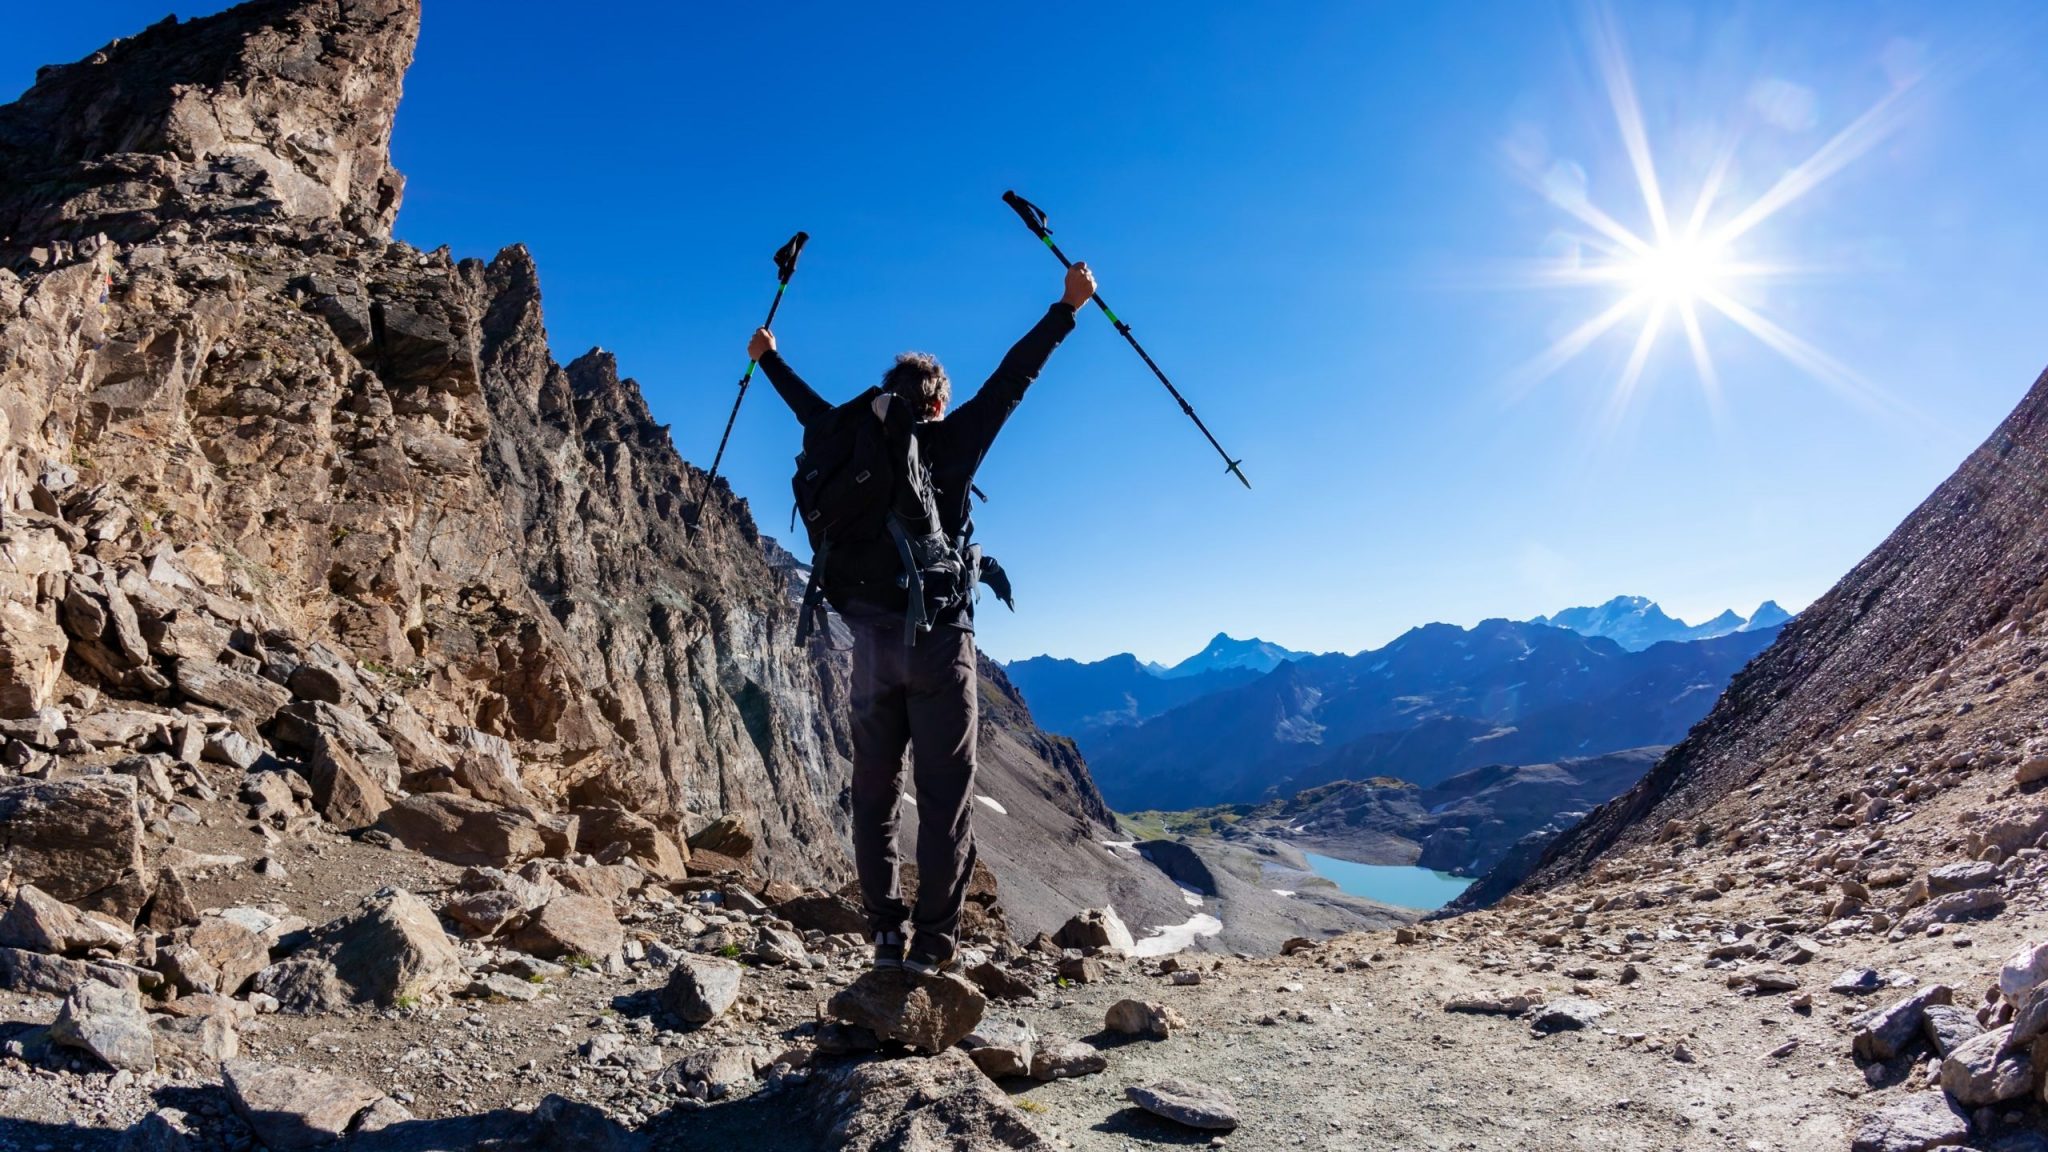 Trekking the Ayas Valley: An Unforgettable Alpine Adventure